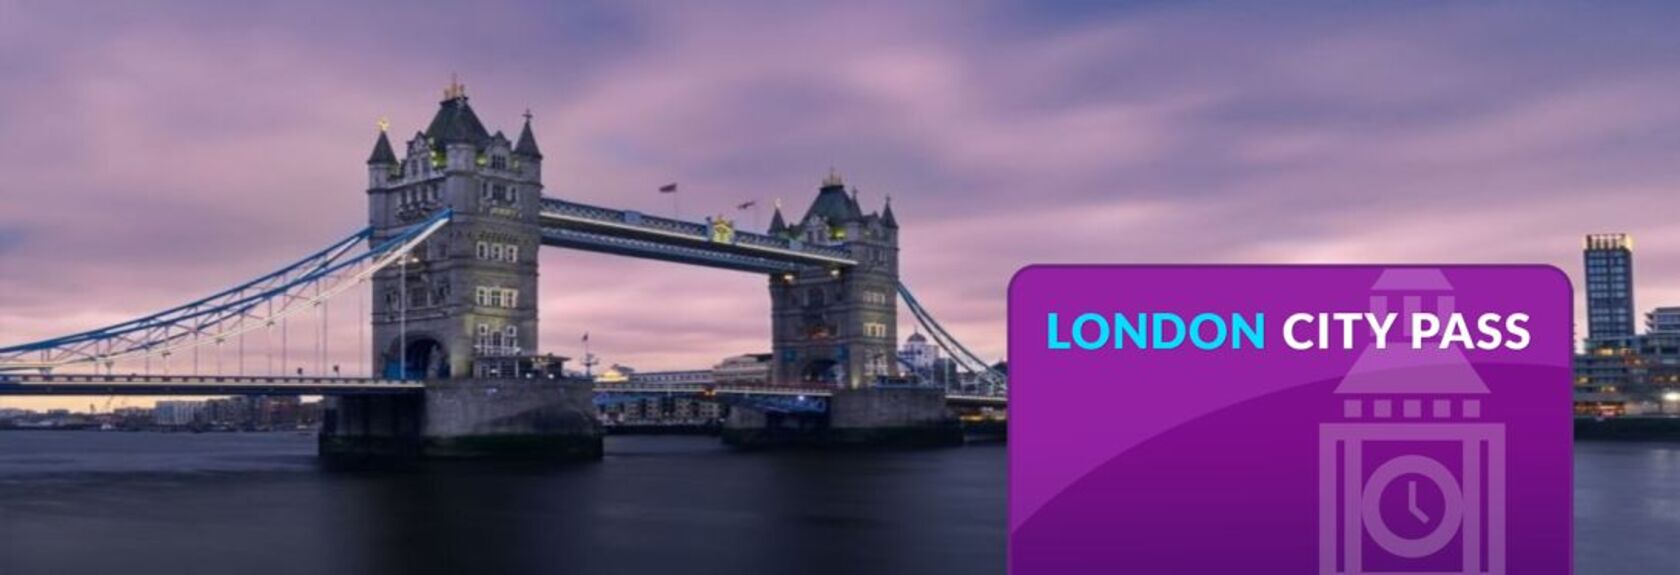 Você quer aproveitar ao máximo a sua viagem a Londres? Então o London City Pass é para você! Com este passe de desconto você vai descobrir Londres de uma maneira fácil e simples